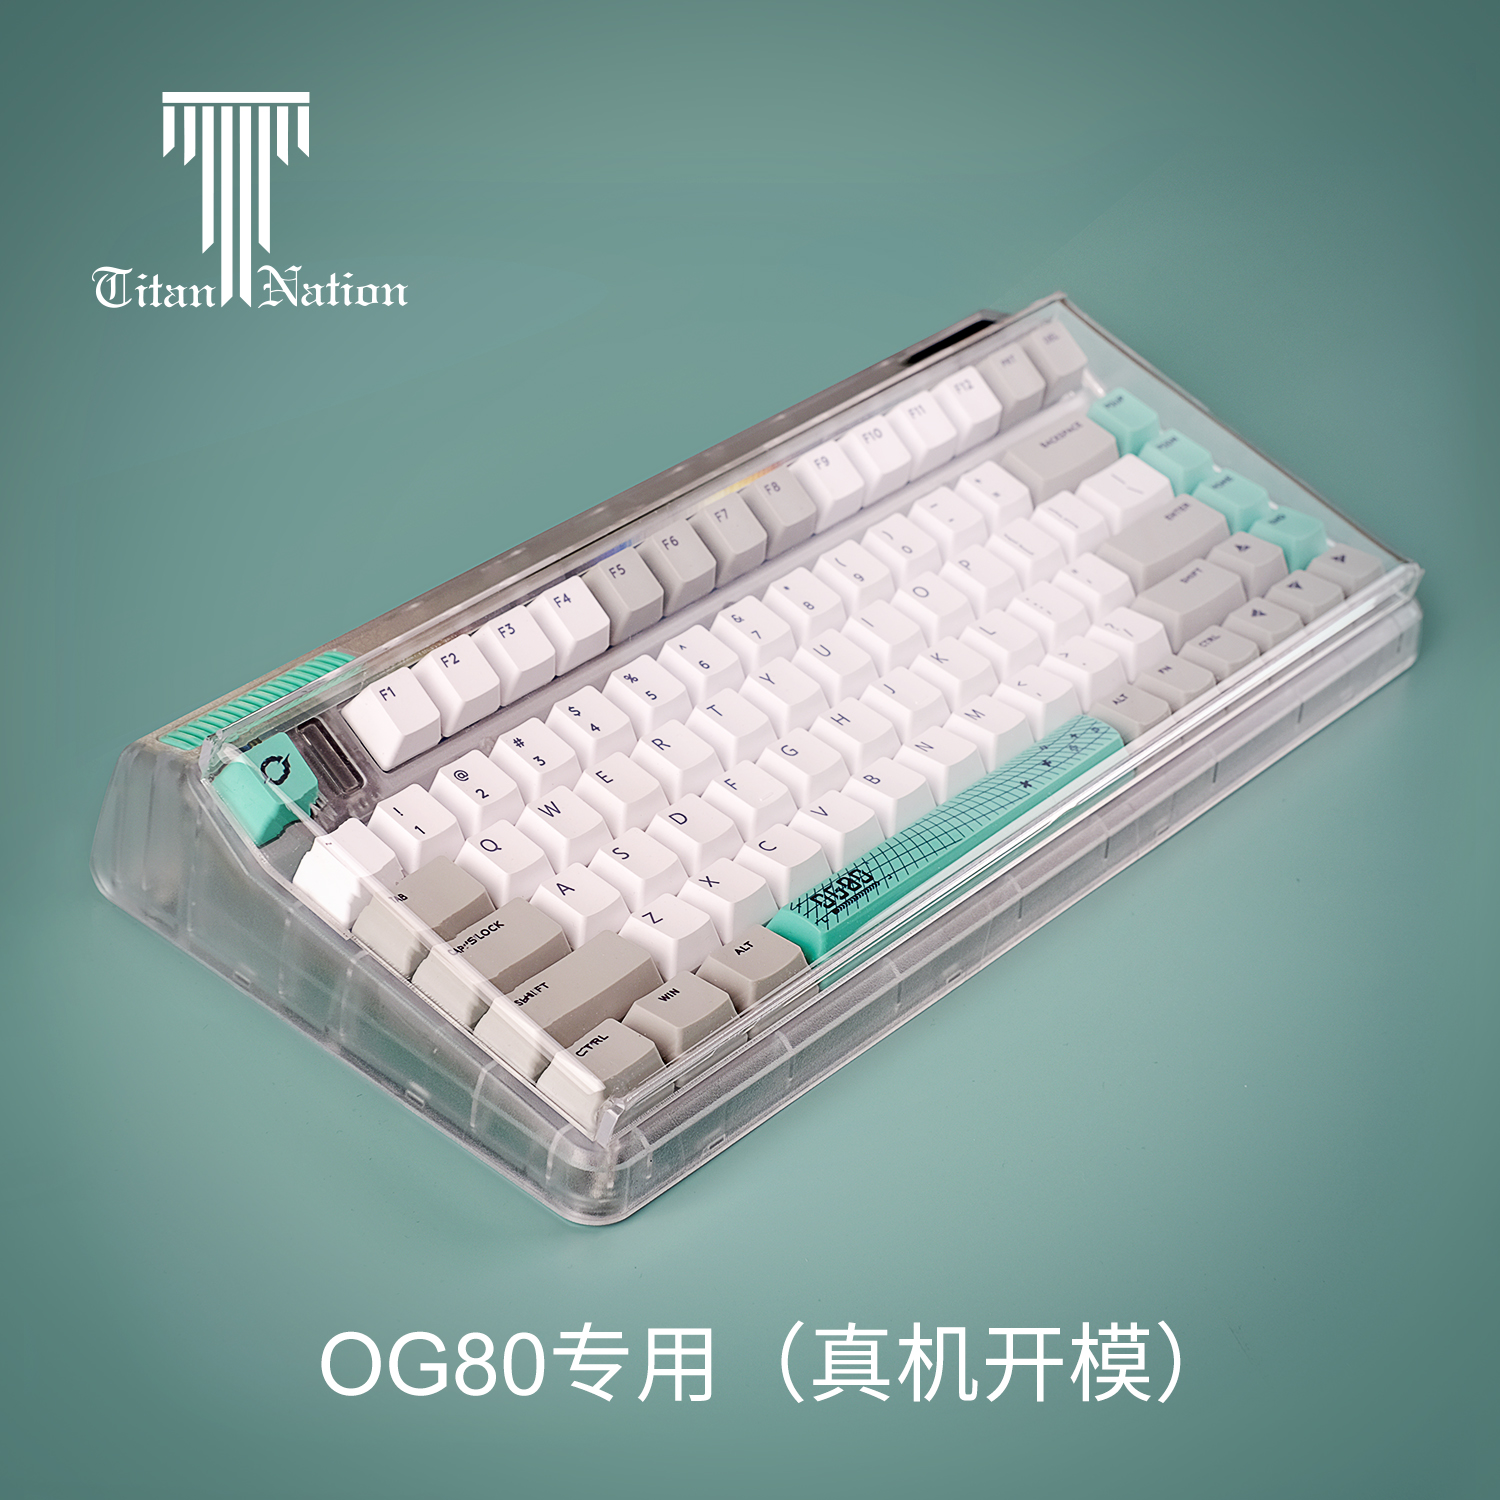 機械鍵盤防塵罩壓克力68透明60鍵8798104鍵NJ68阿米洛FL980鍵帽罩- Taobao